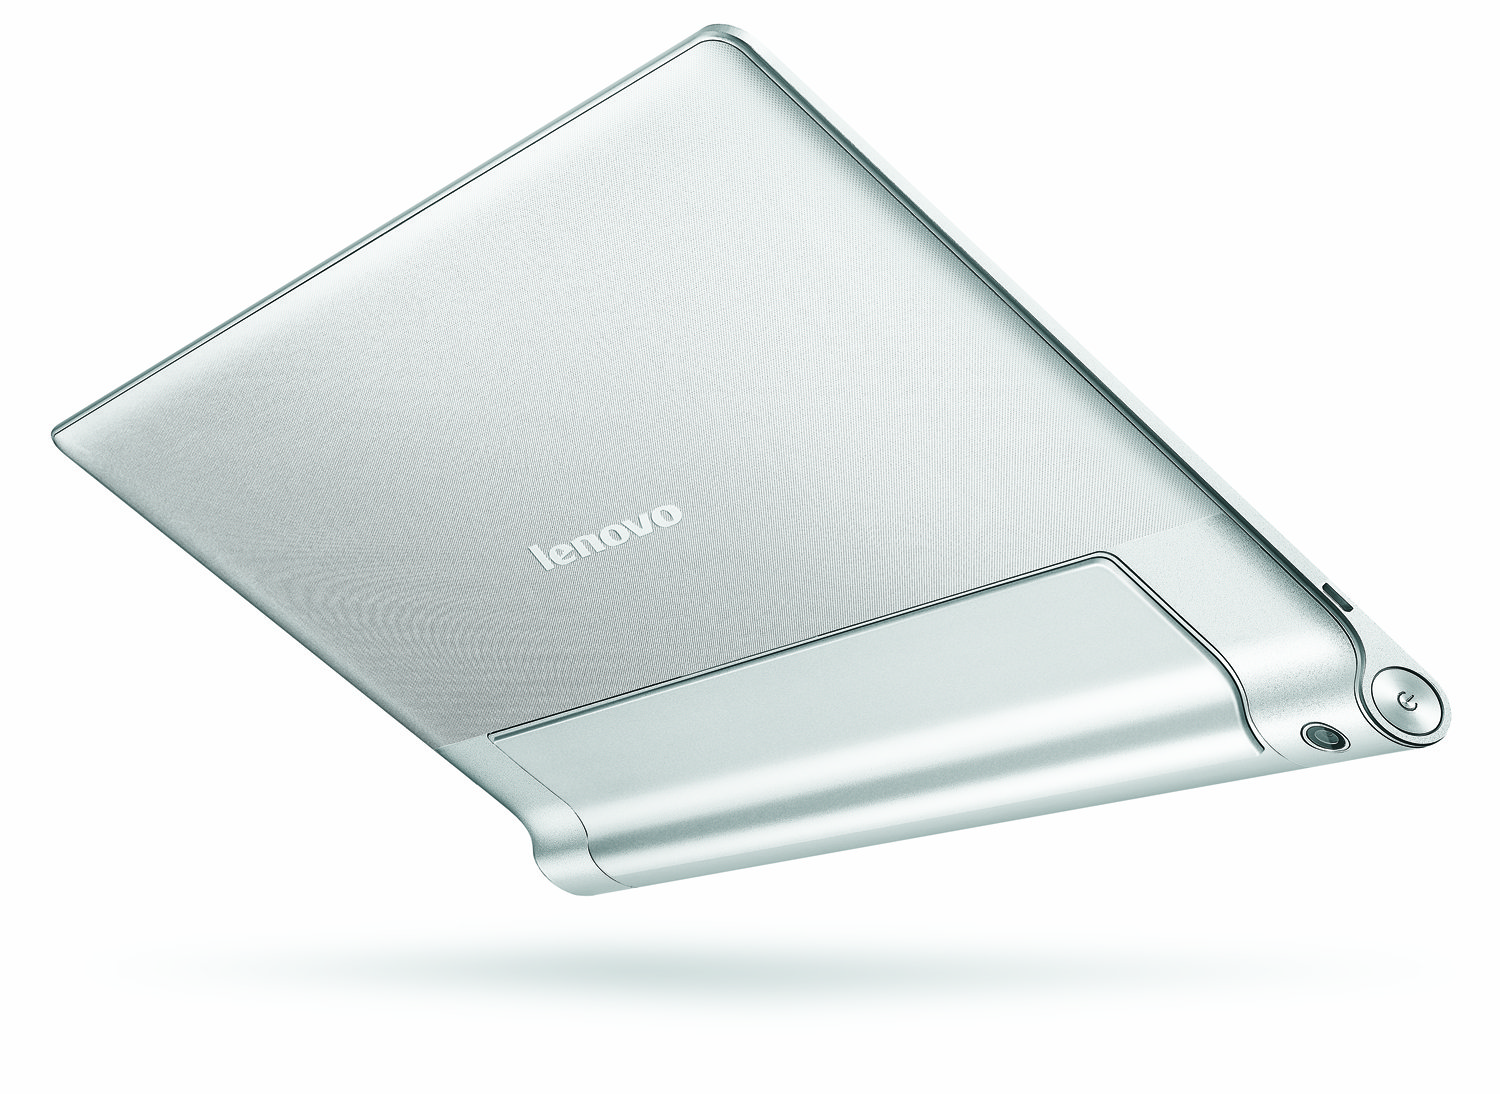 Lenovo-Yoga-Tablet-10-HD